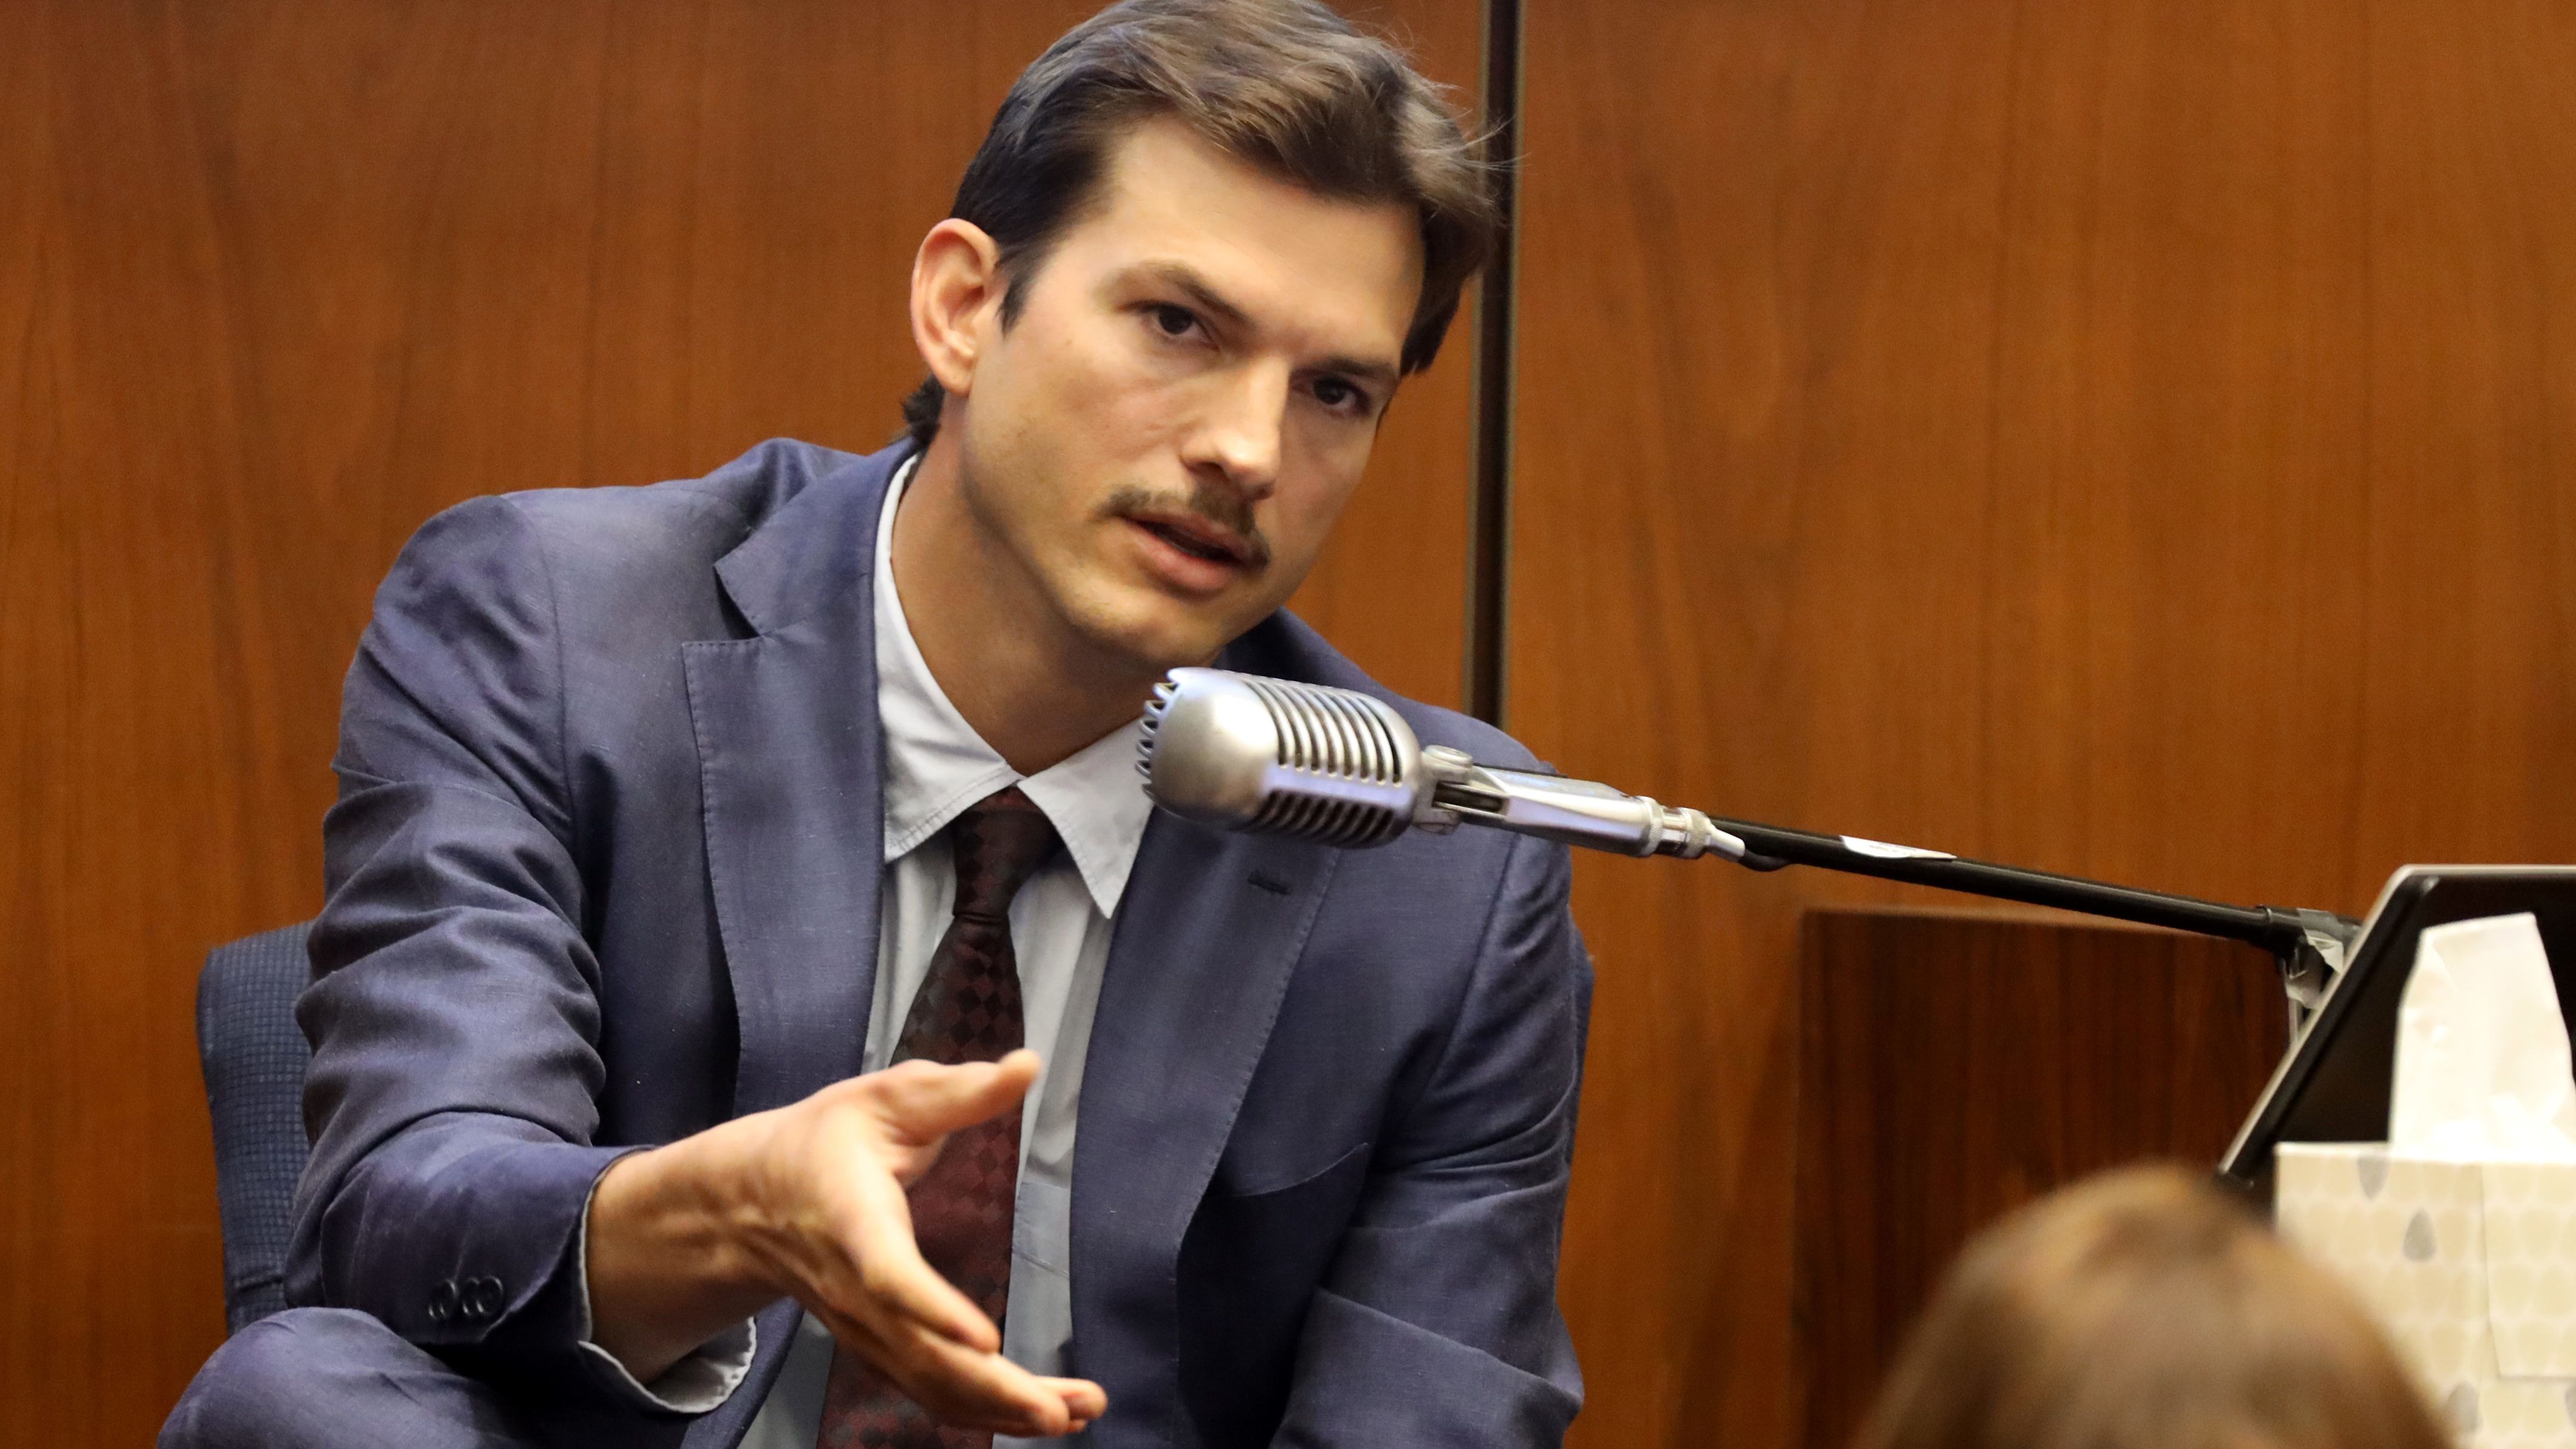 Sorozatgyilkos ellen tett vallomást Ashton Kutcher